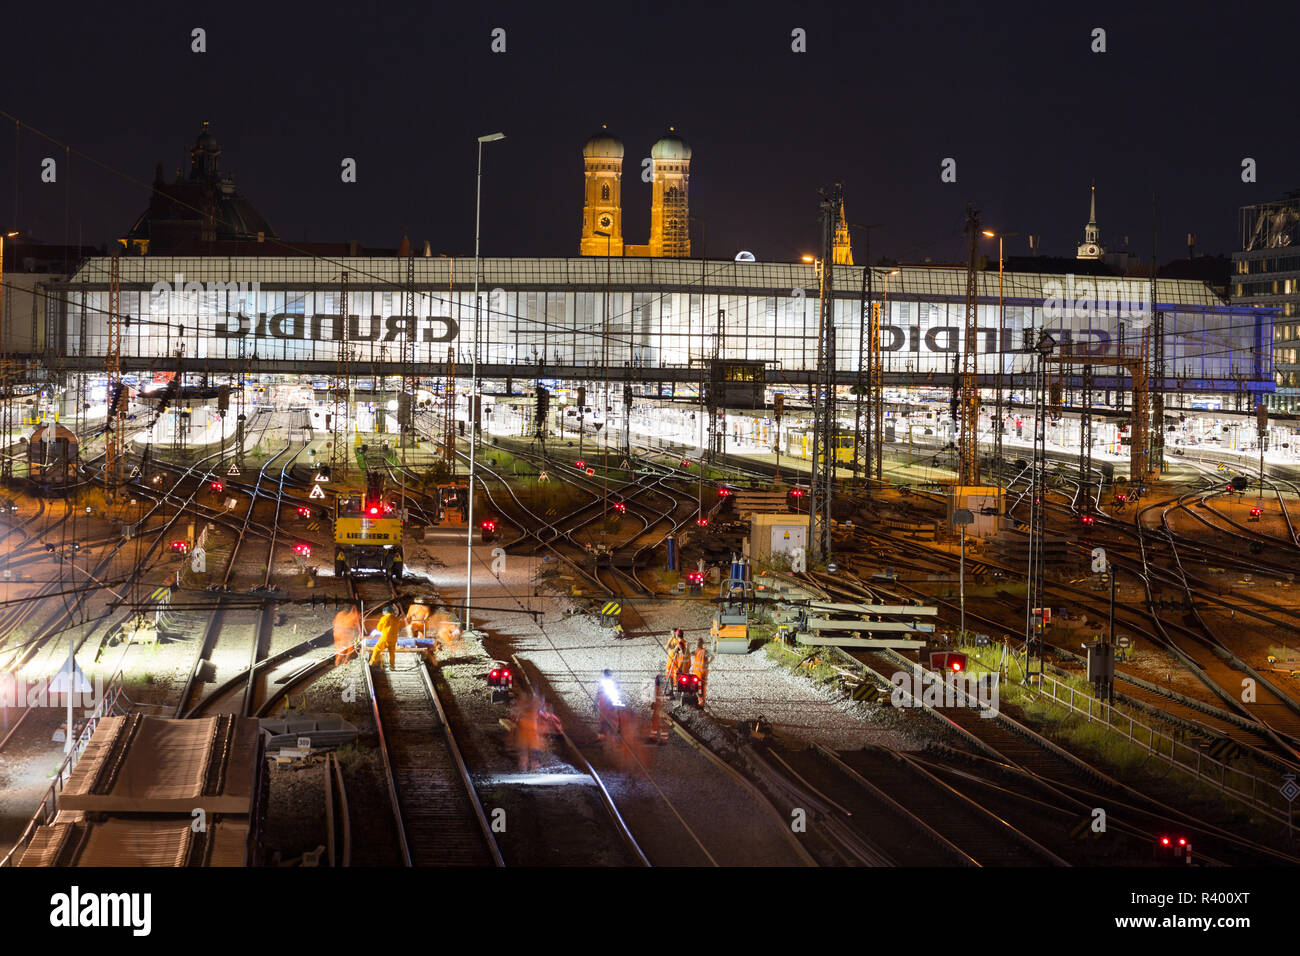 La gare centrale d'illuminé avec des pistes la nuit, derrière l'église Notre Dame, Munich, Allemagne Banque D'Images